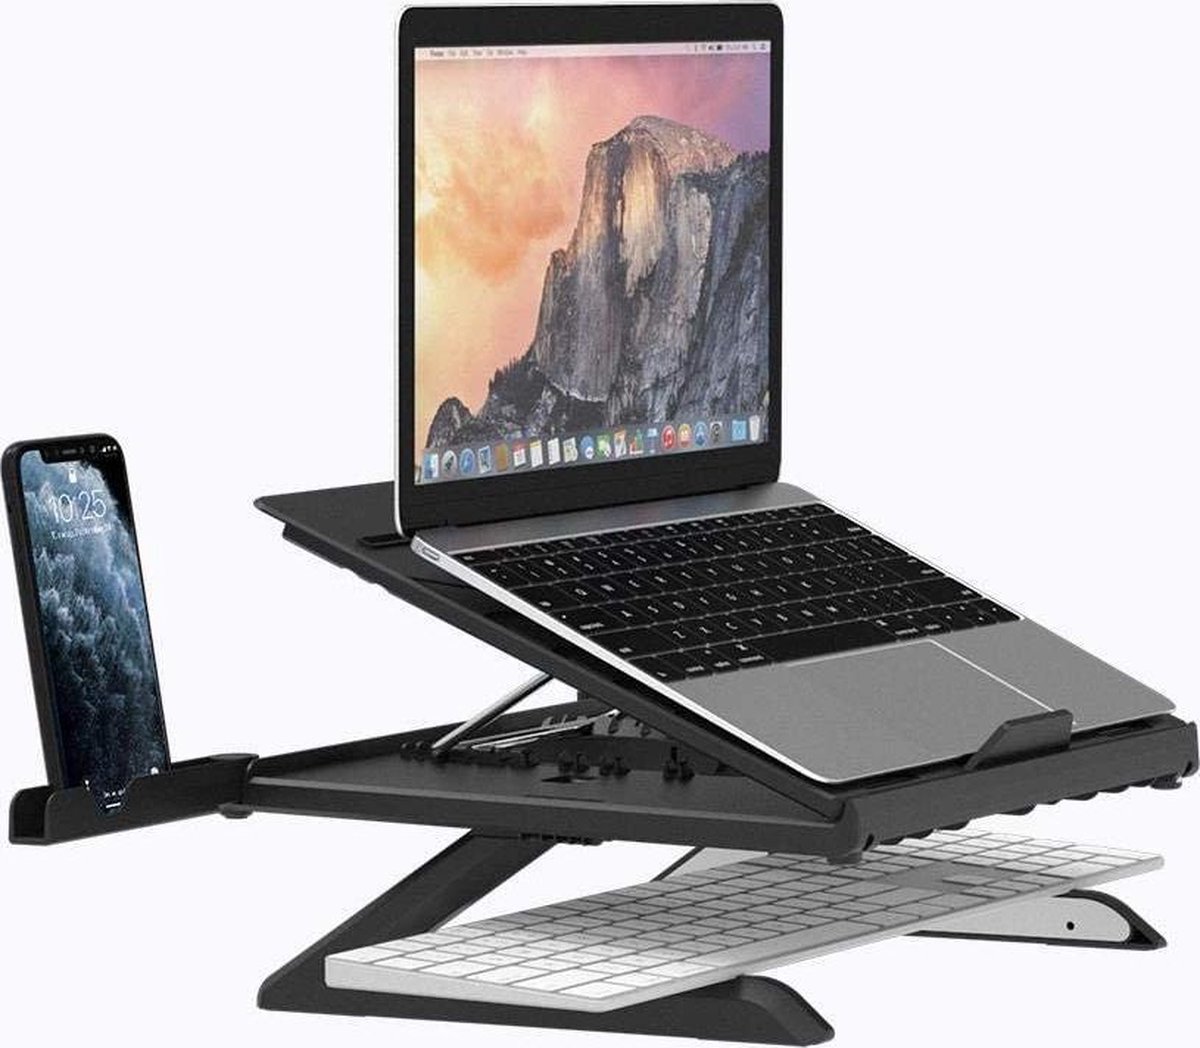 Selwo™ Laptop Standaard, ergonomische laptop standaard, verstelbare notebook standaard, tablethouder, geschikt voor laptop (10-17 inch) waaronder MacBook Pro/Air, Surface, Samsung, HP, iPad, zwart